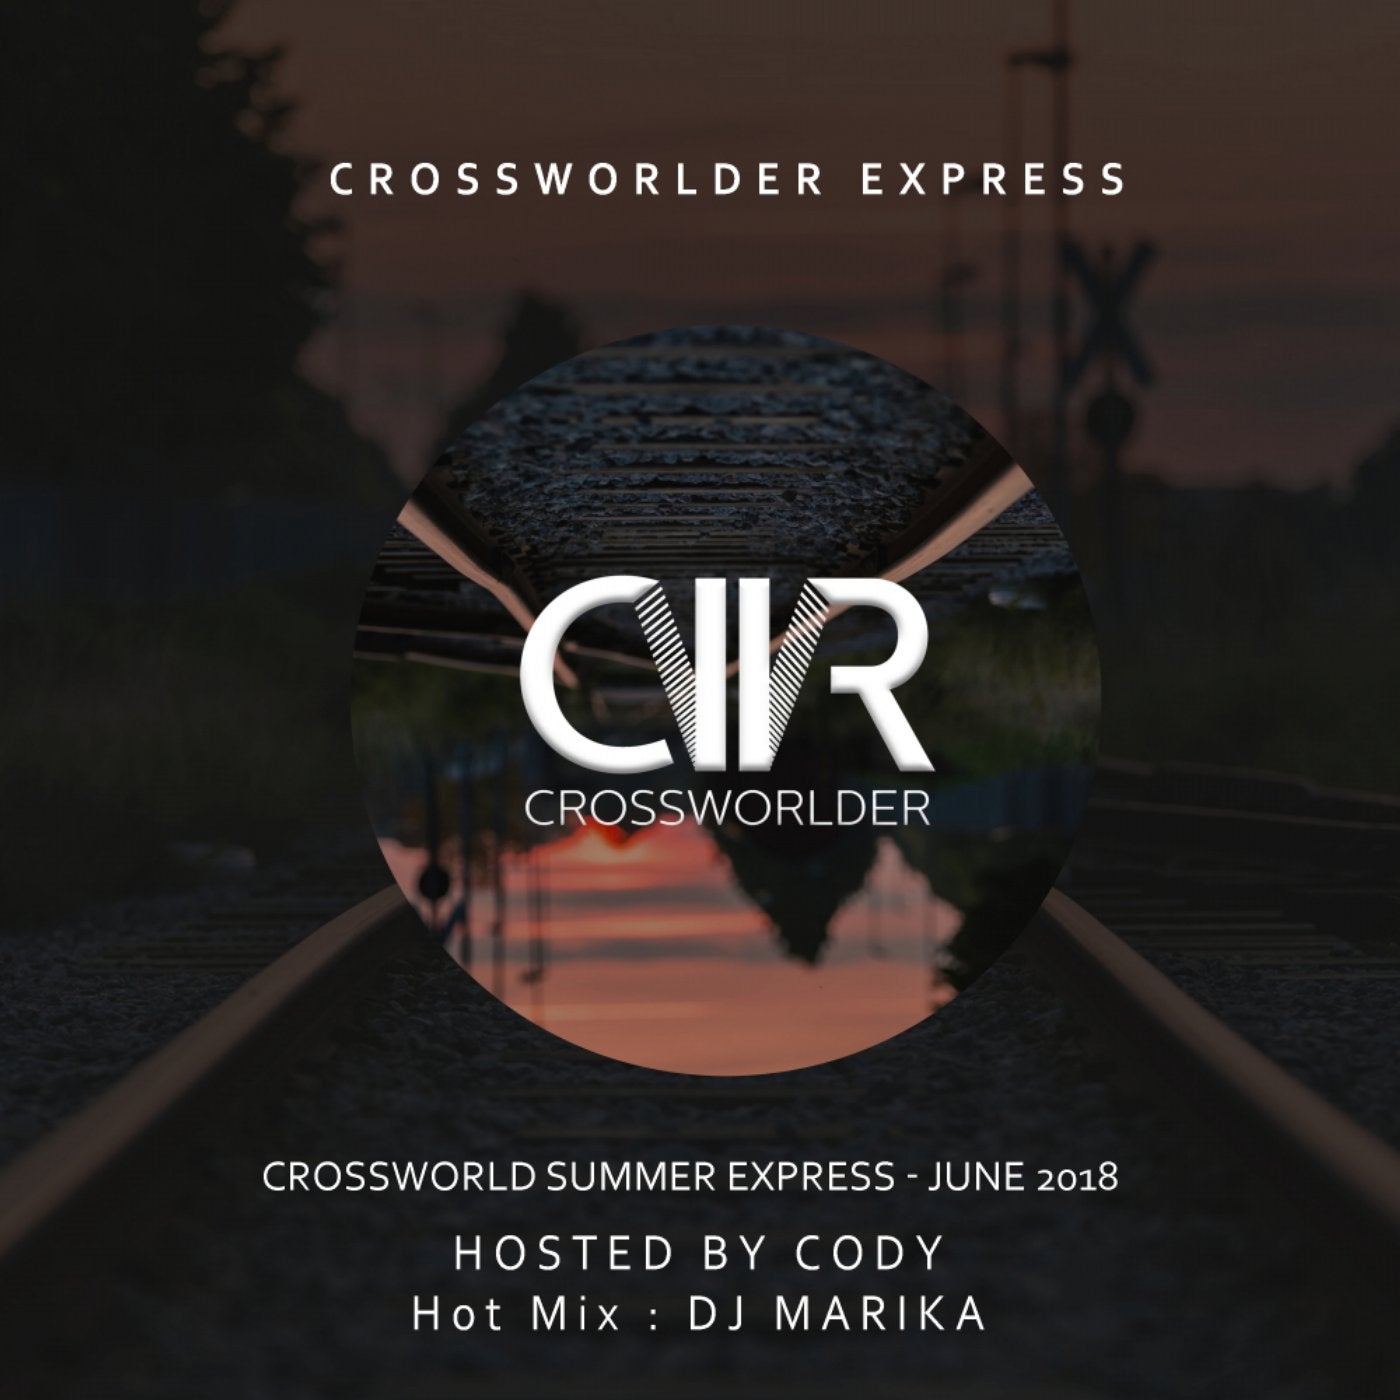 Crossworlder Summer Express: June 2018